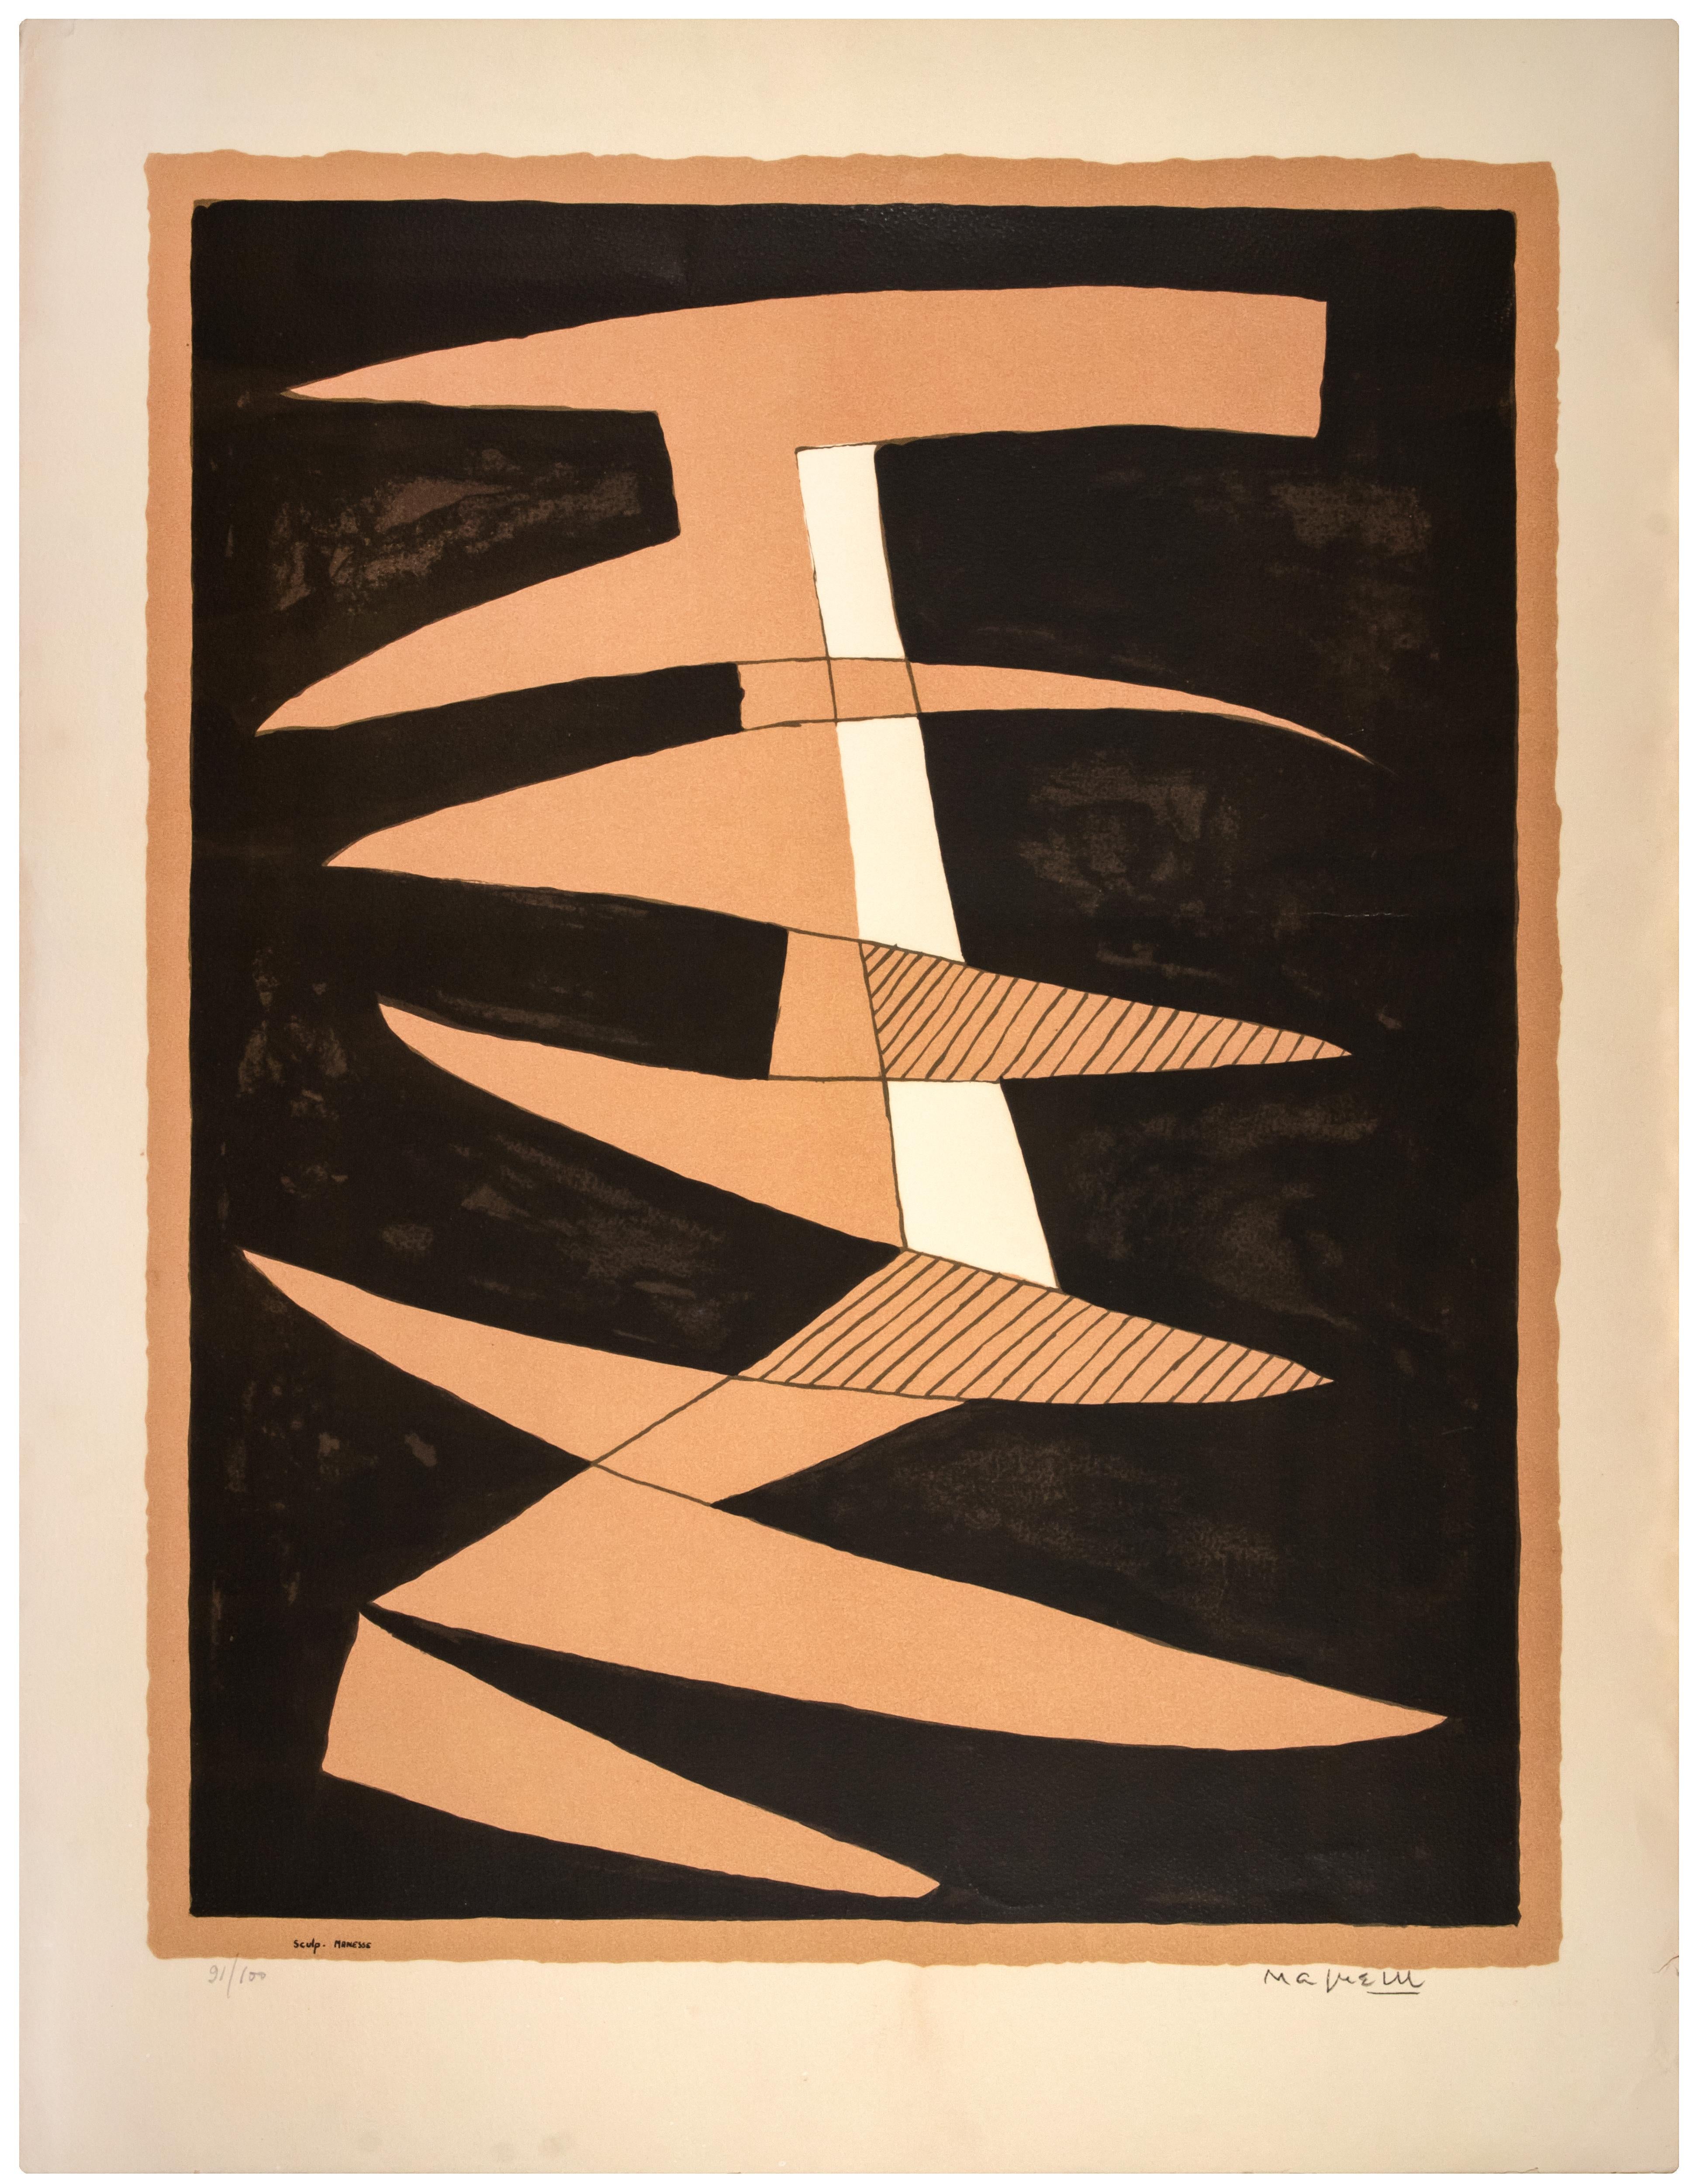 Untitled ist ein originales zeitgenössisches Kunstwerk von Alberto Magnelli aus dem Jahr 1945.

Handsigniert am unteren rechten Rand.

Links unten nummeriert. Auflage von 91/100

Farblithographie nach einer Gouache.

Herausgegeben von ABCD Gallery